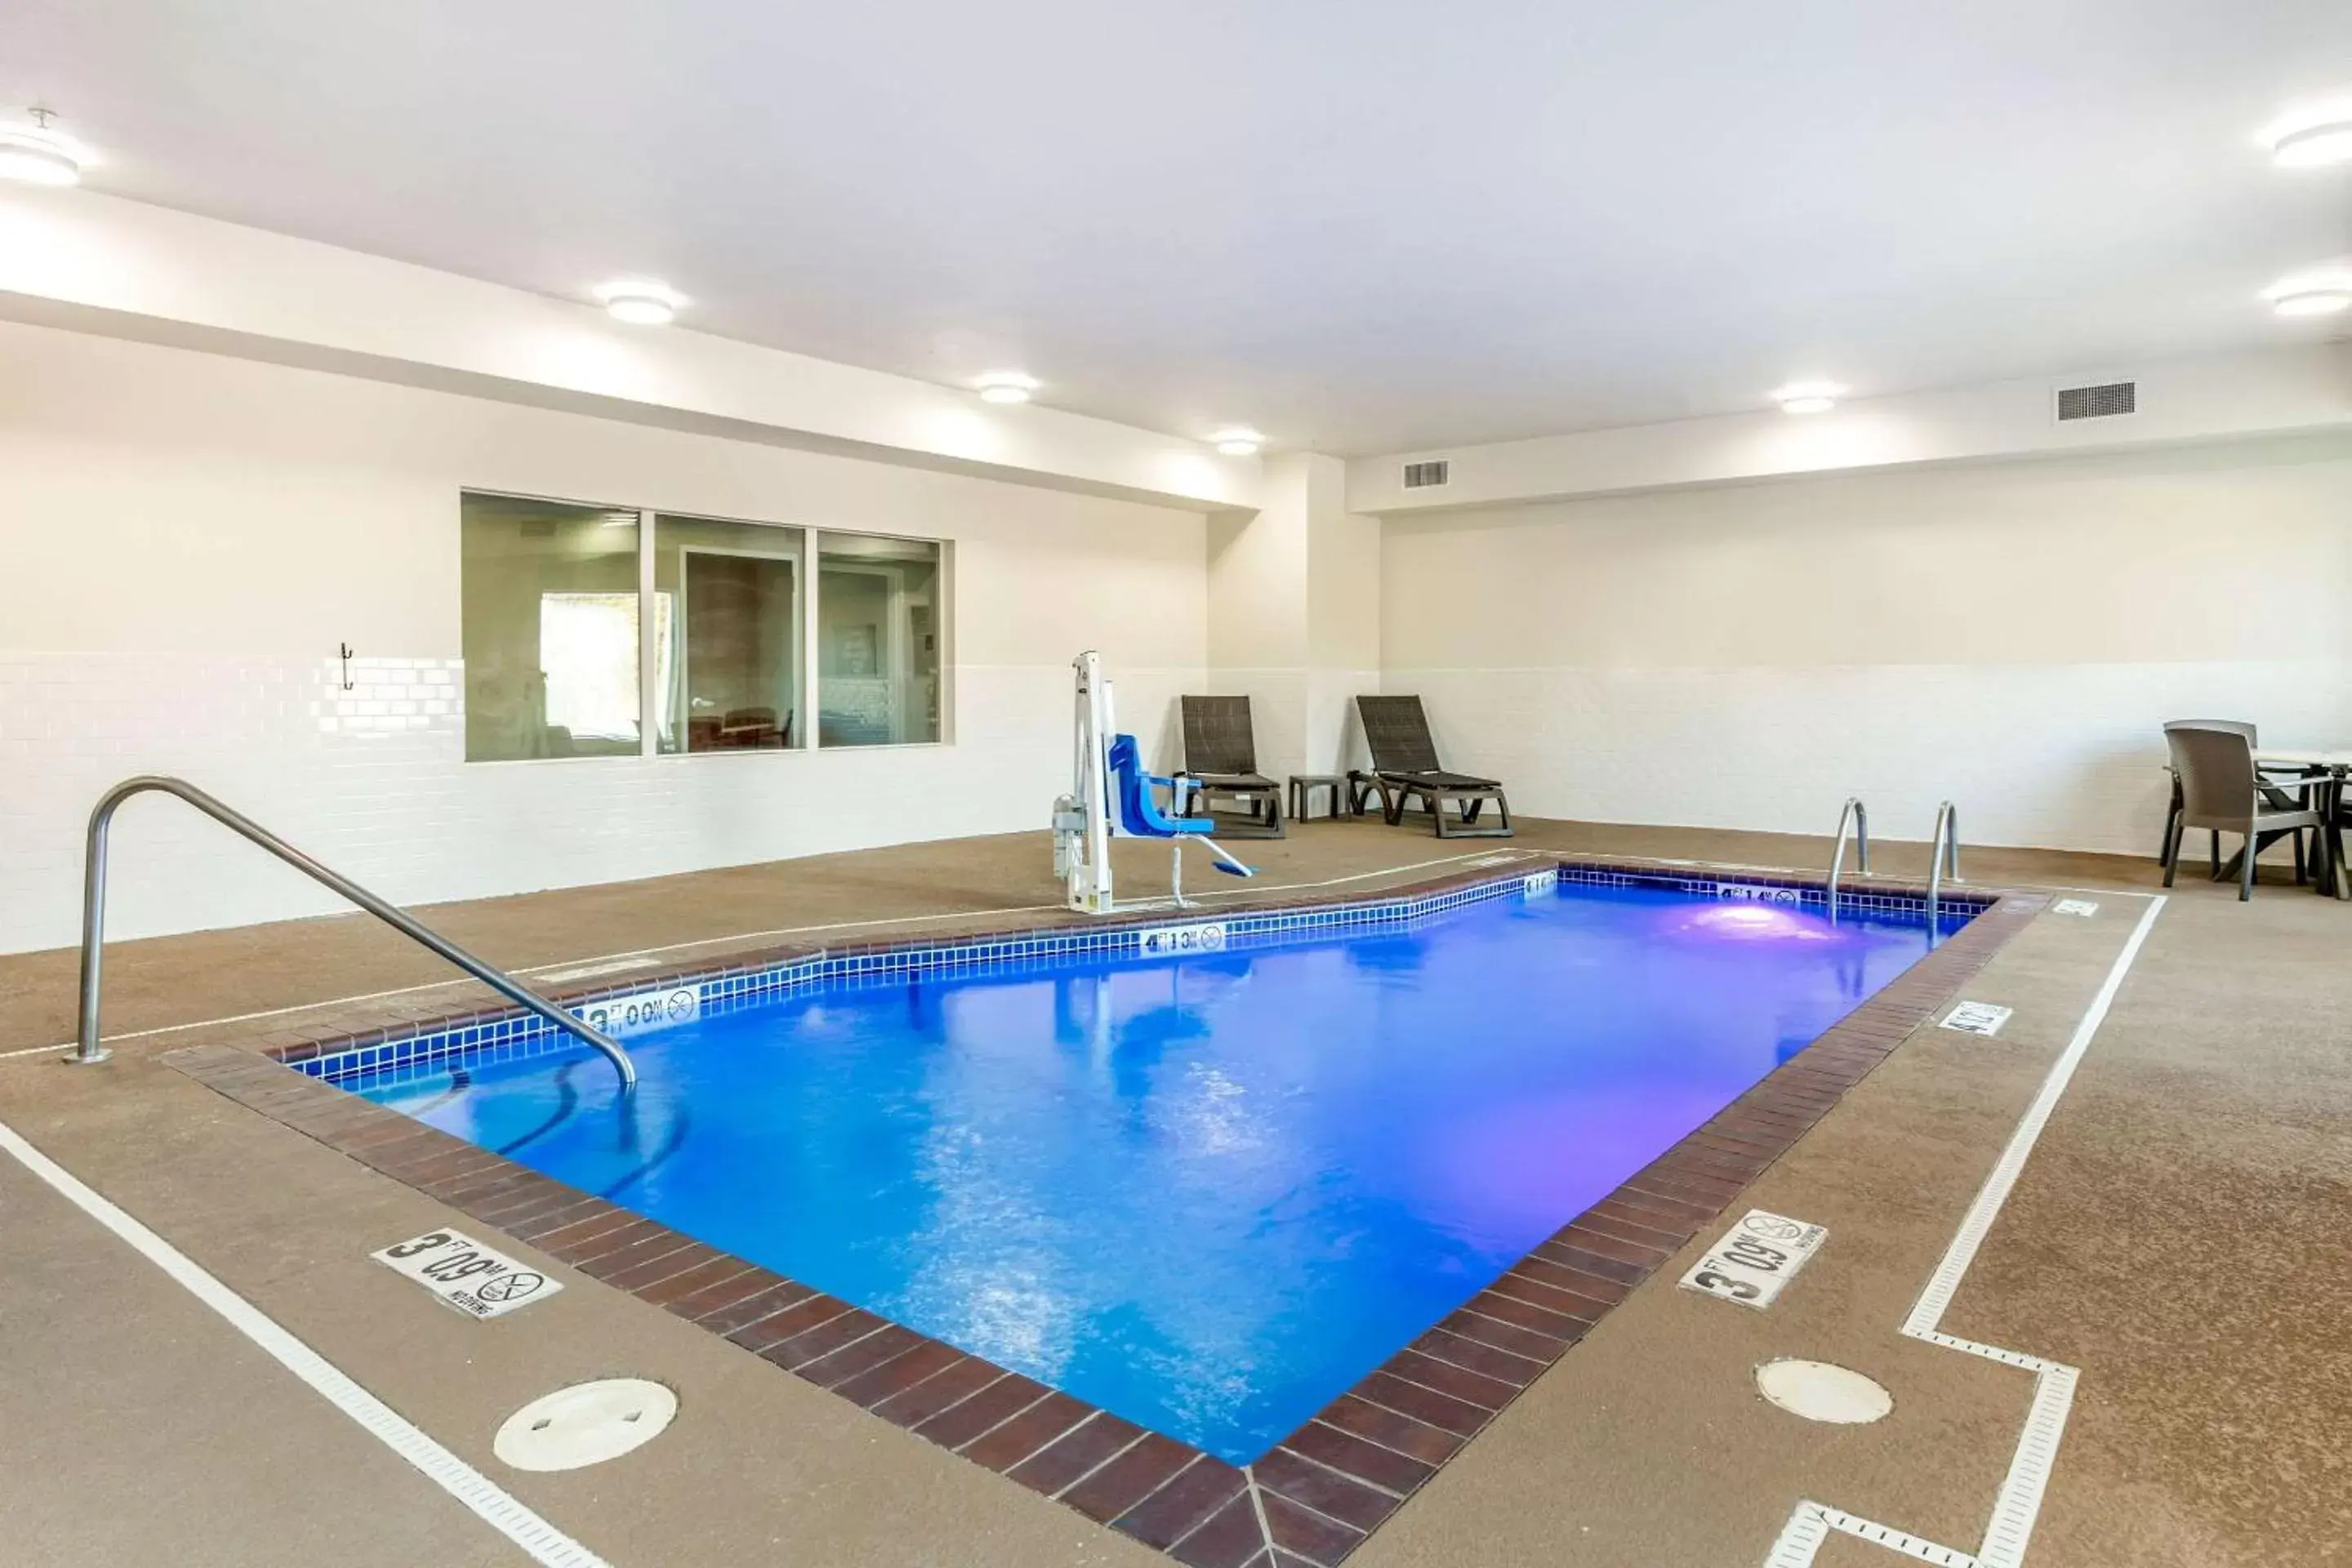 On site, Swimming Pool in Comfort Inn and Suites Van Buren - Fort Smith